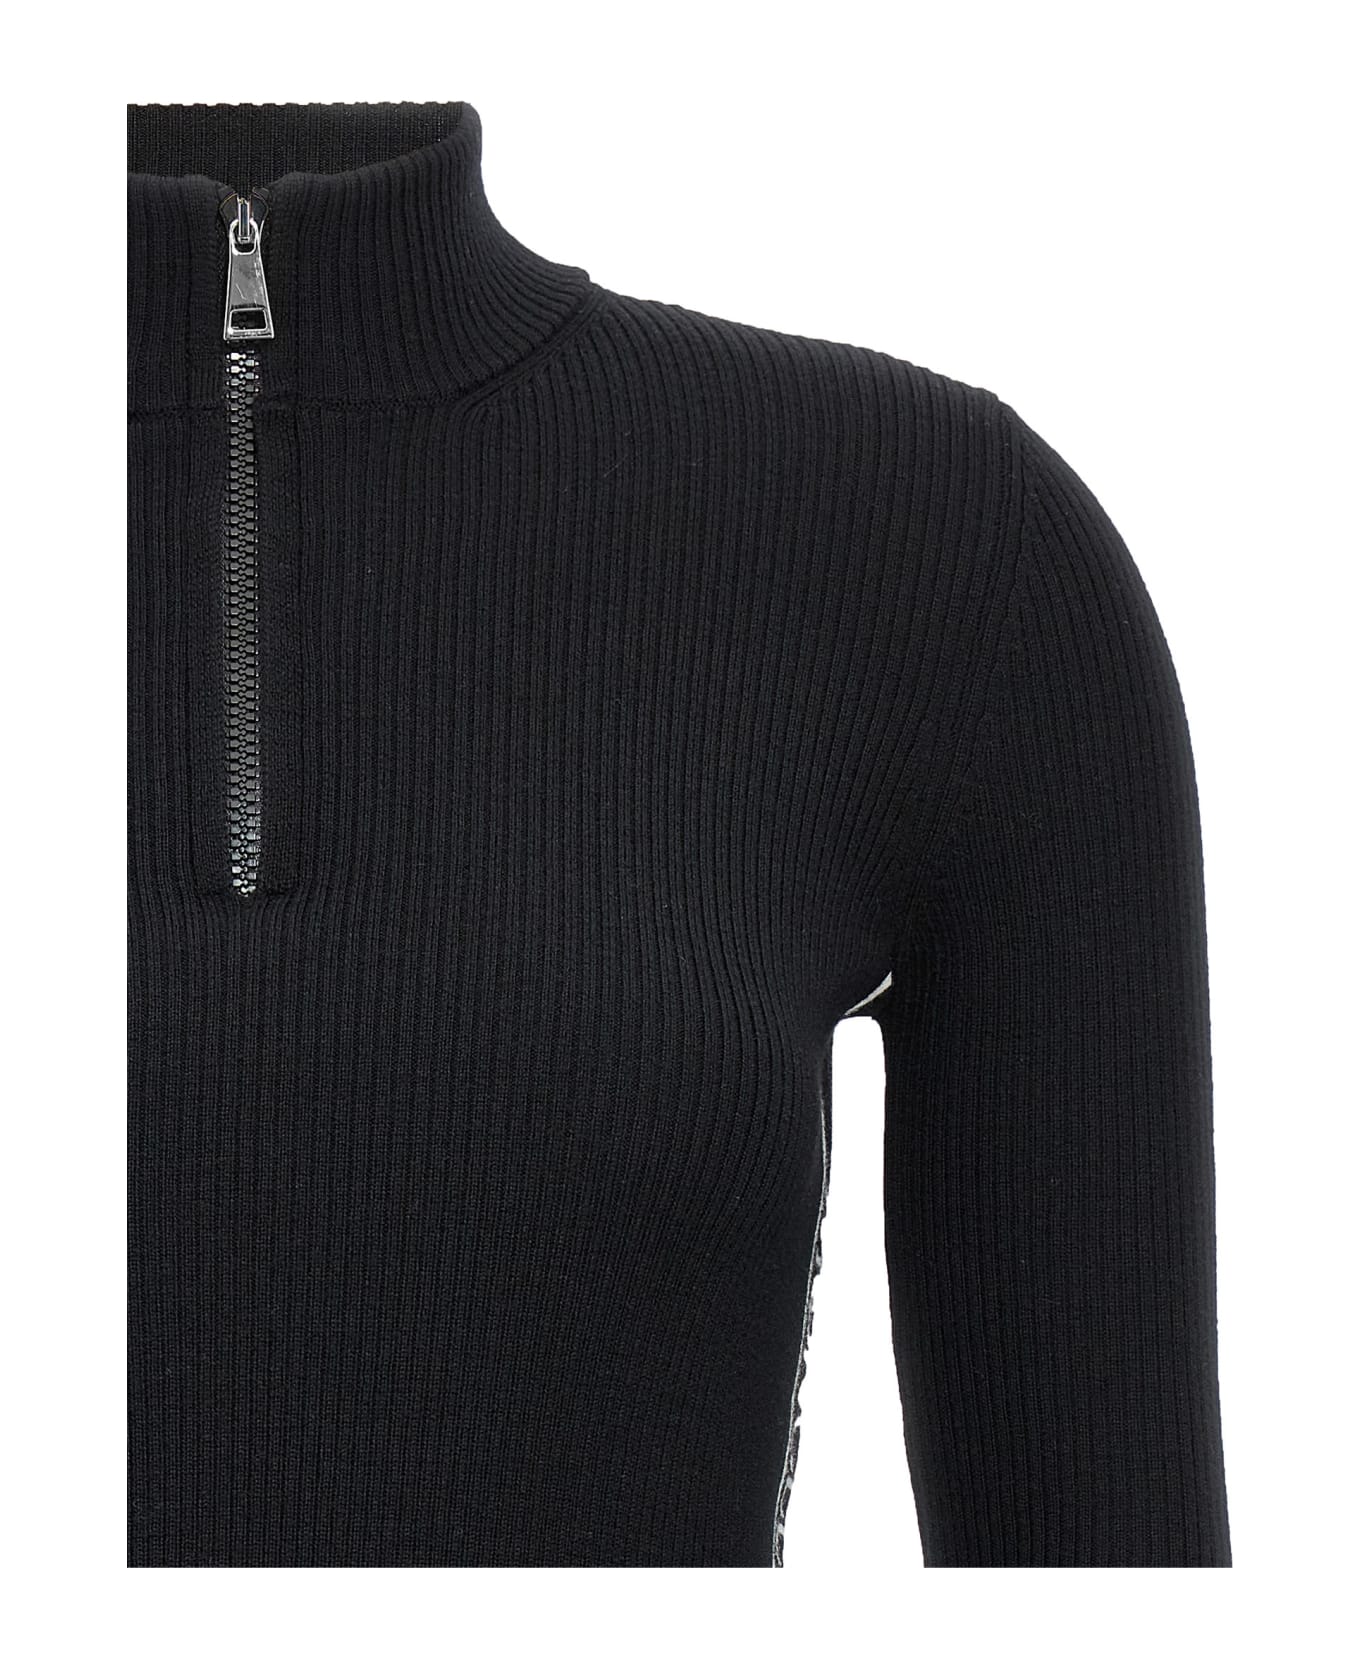 Moncler Black Wool Turtleneck With Zip - Black ニットウェア